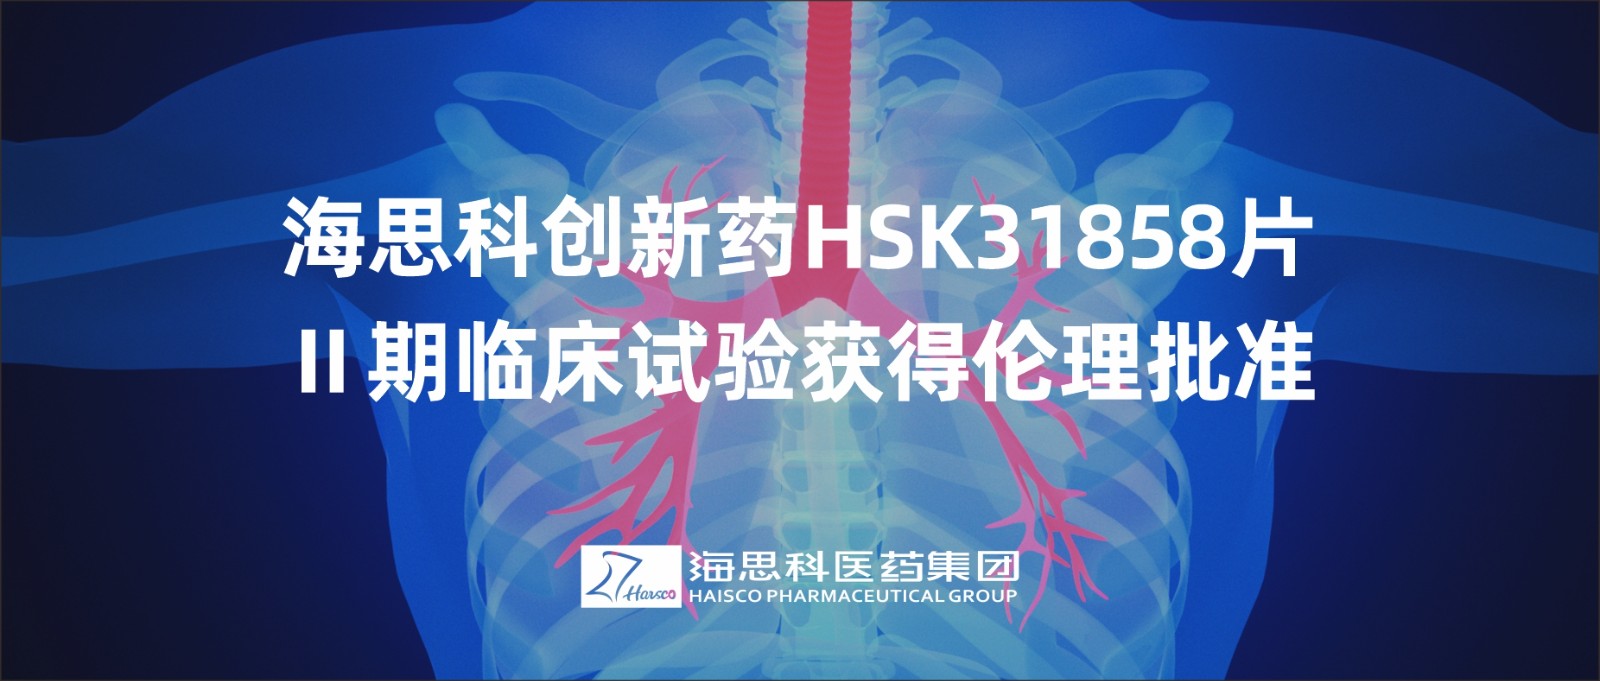 2138太阳诚娱乐官网创新药HSK31858片Ⅱ期临床试验获得伦理批准